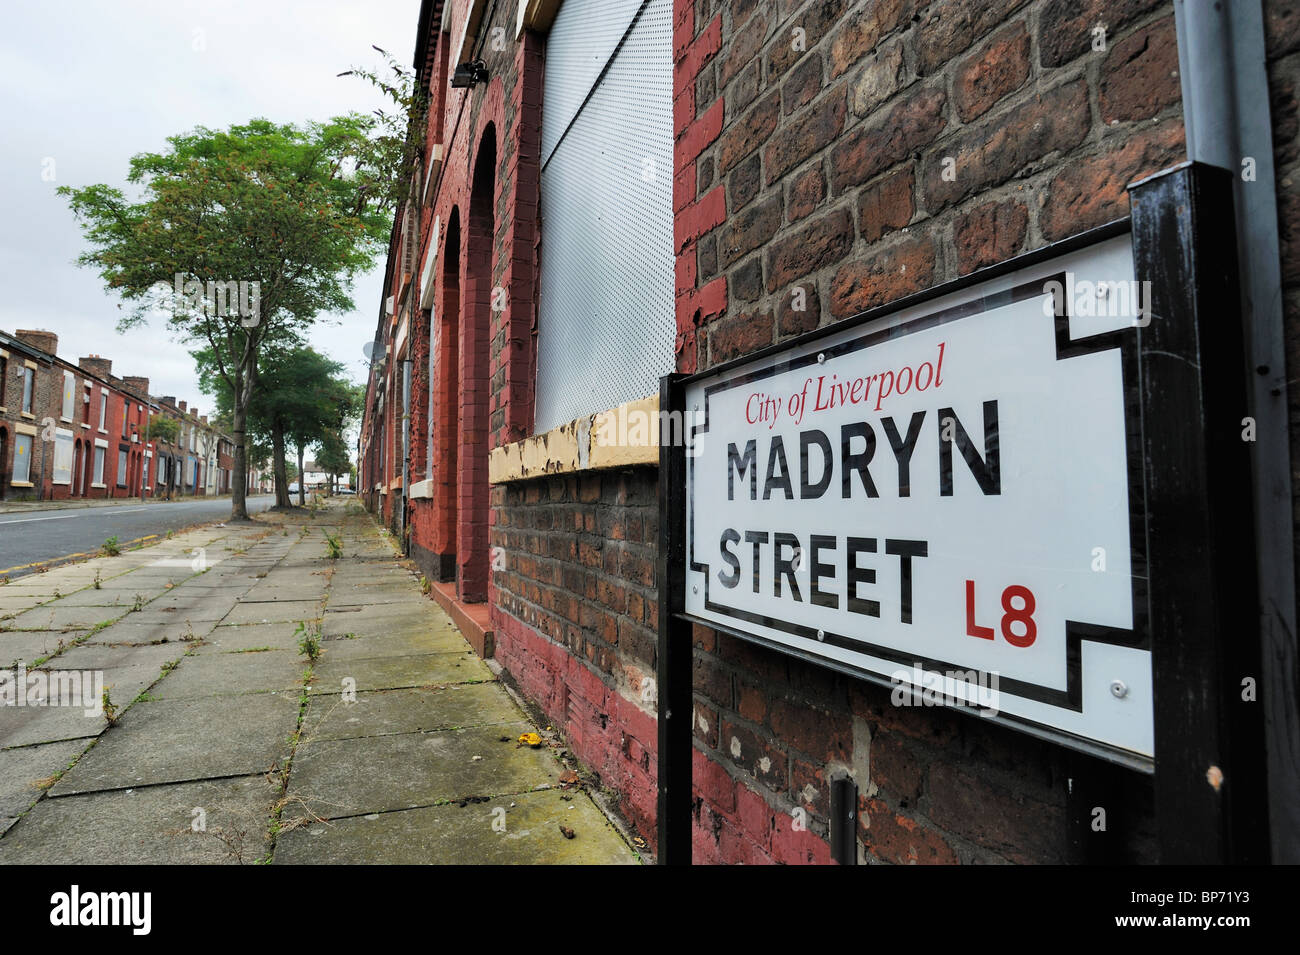 Madryn Street, der Geburtsort von Richard Starkey (Ringo Starr) der Schlagzeuger der Beatles. Stockfoto